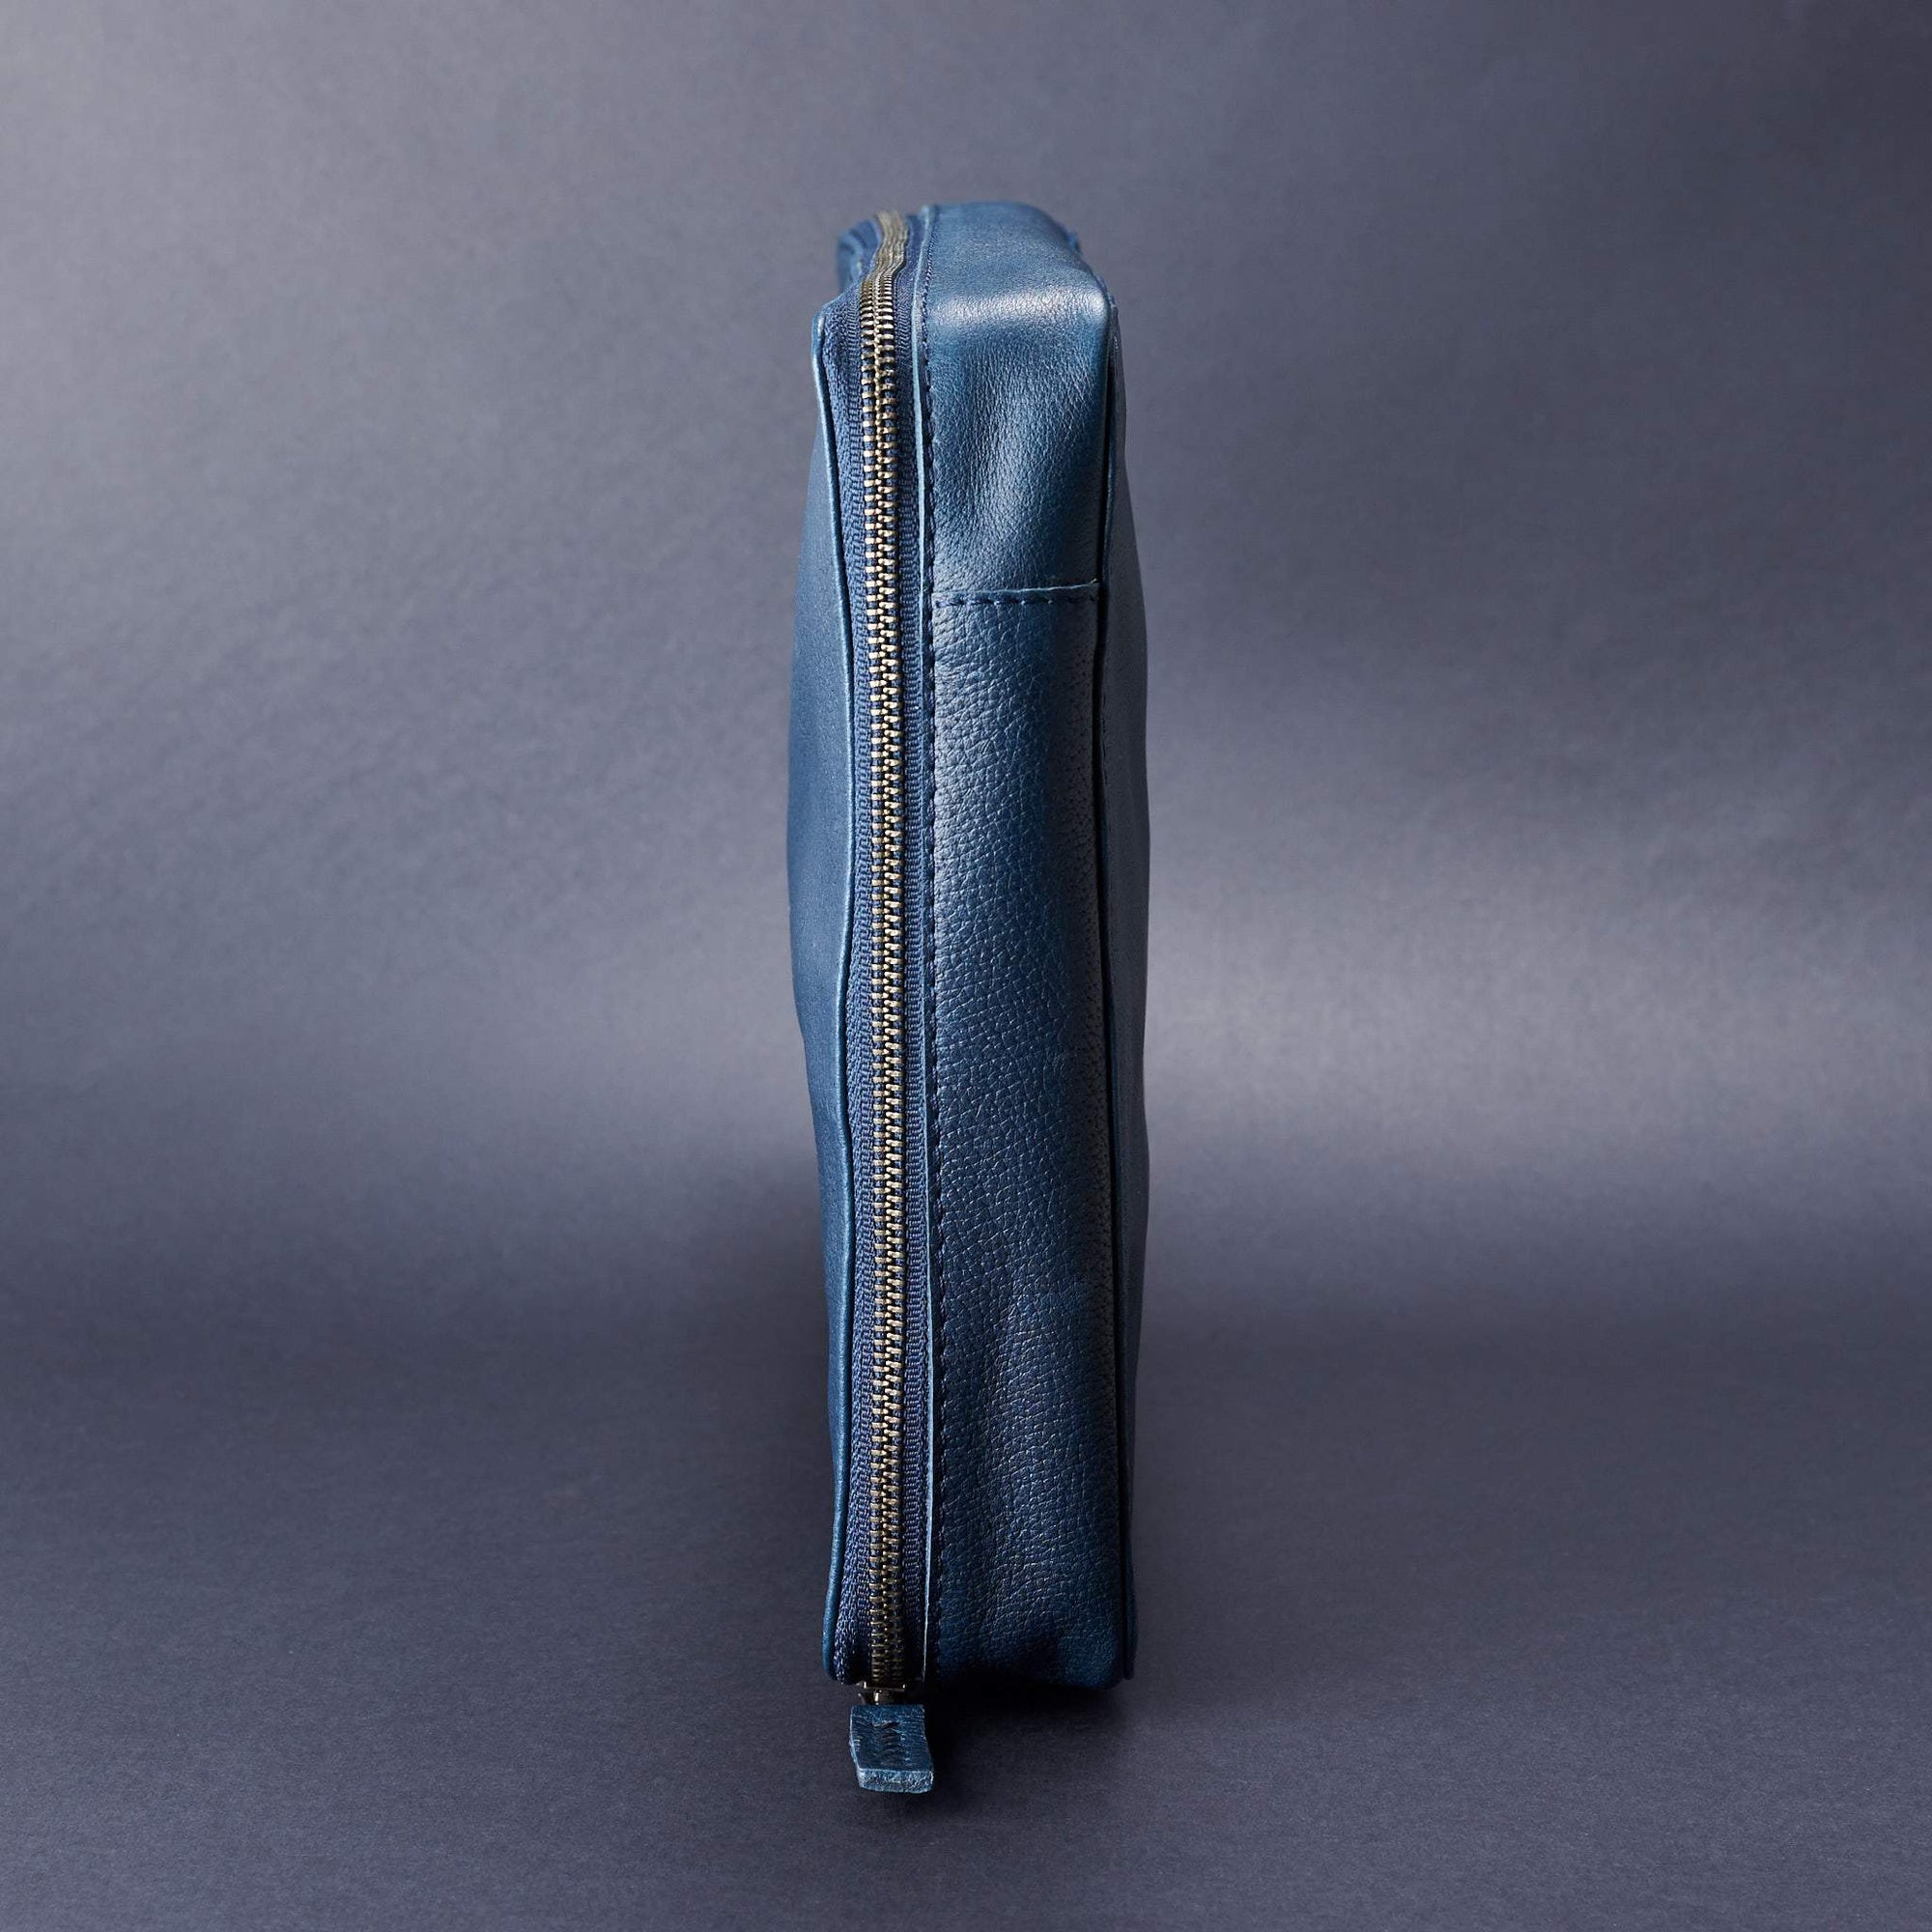 Slim fit gear pouch. Navy blue tech gear zipper bag by Capra Leather